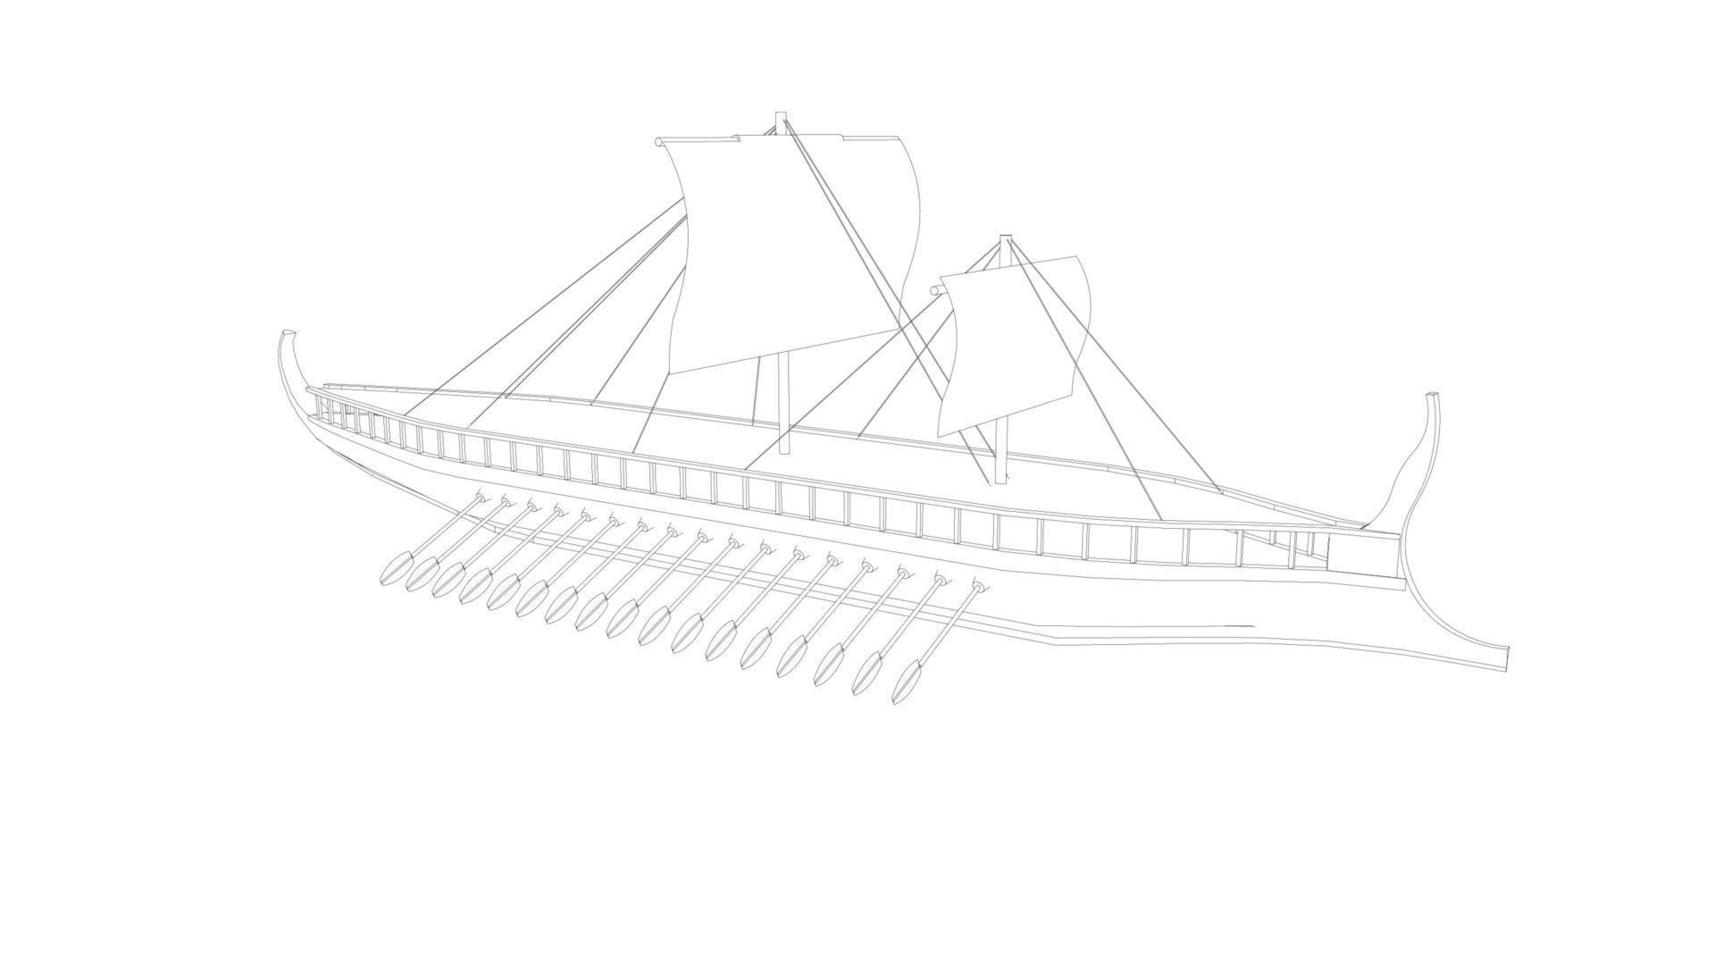 velero clásico estilo lineart vector